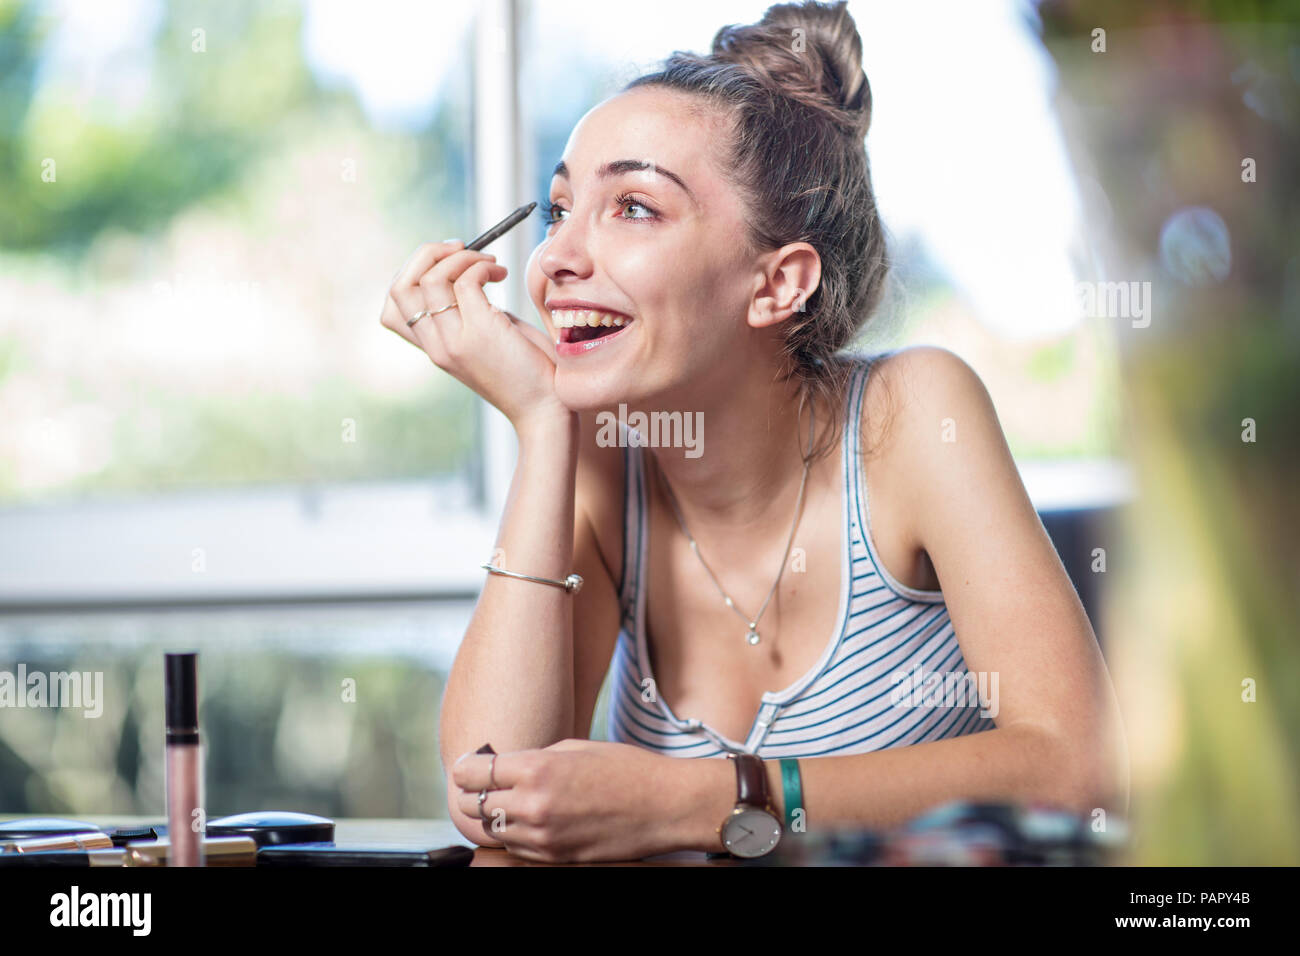 Happy teenage girl applying makeup Stock Photo